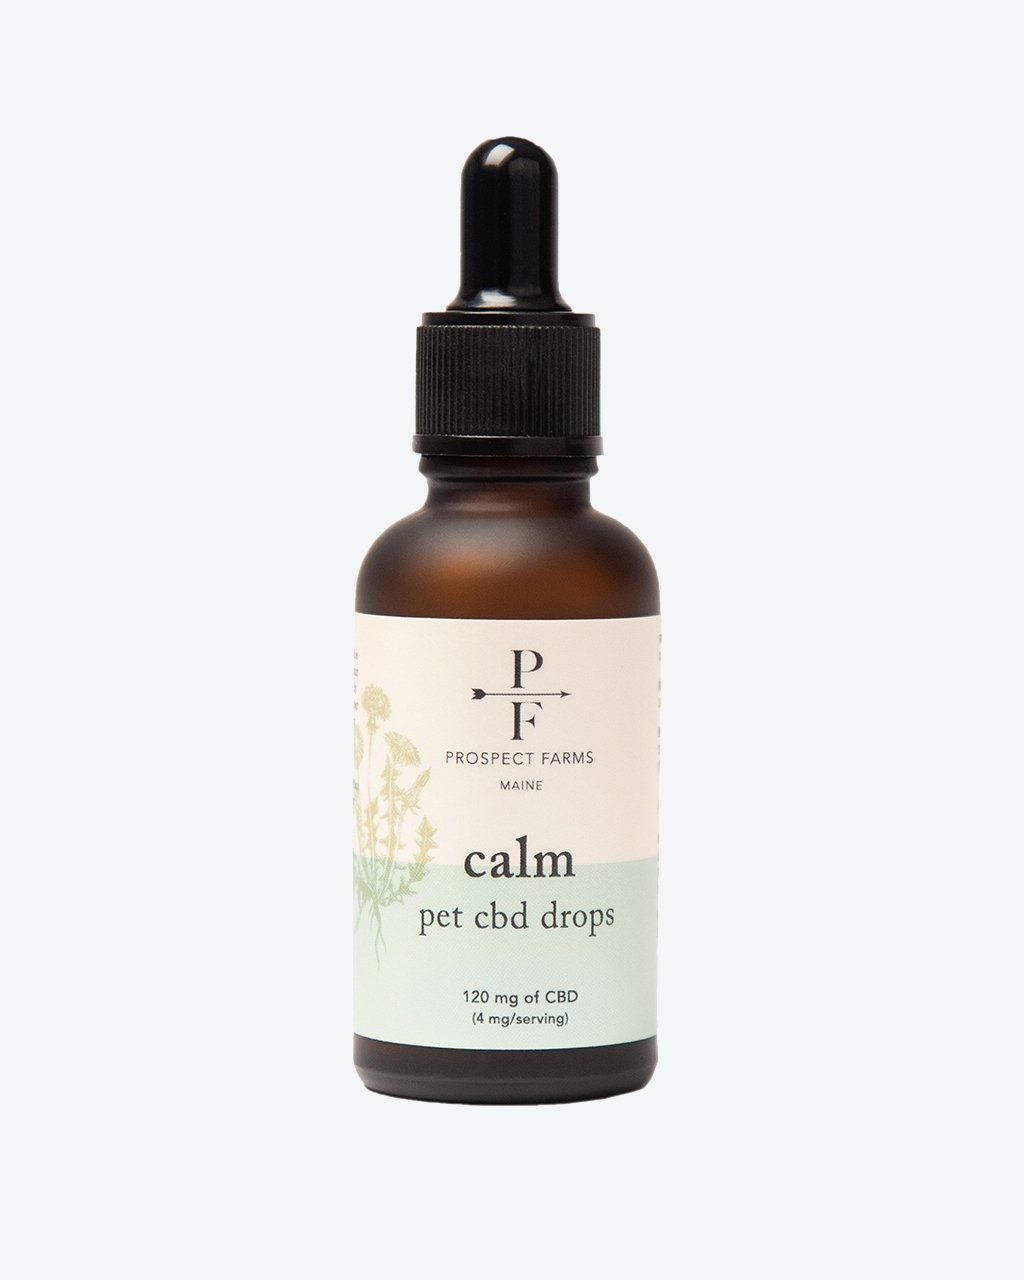 a bottle of calm pet CBD drops